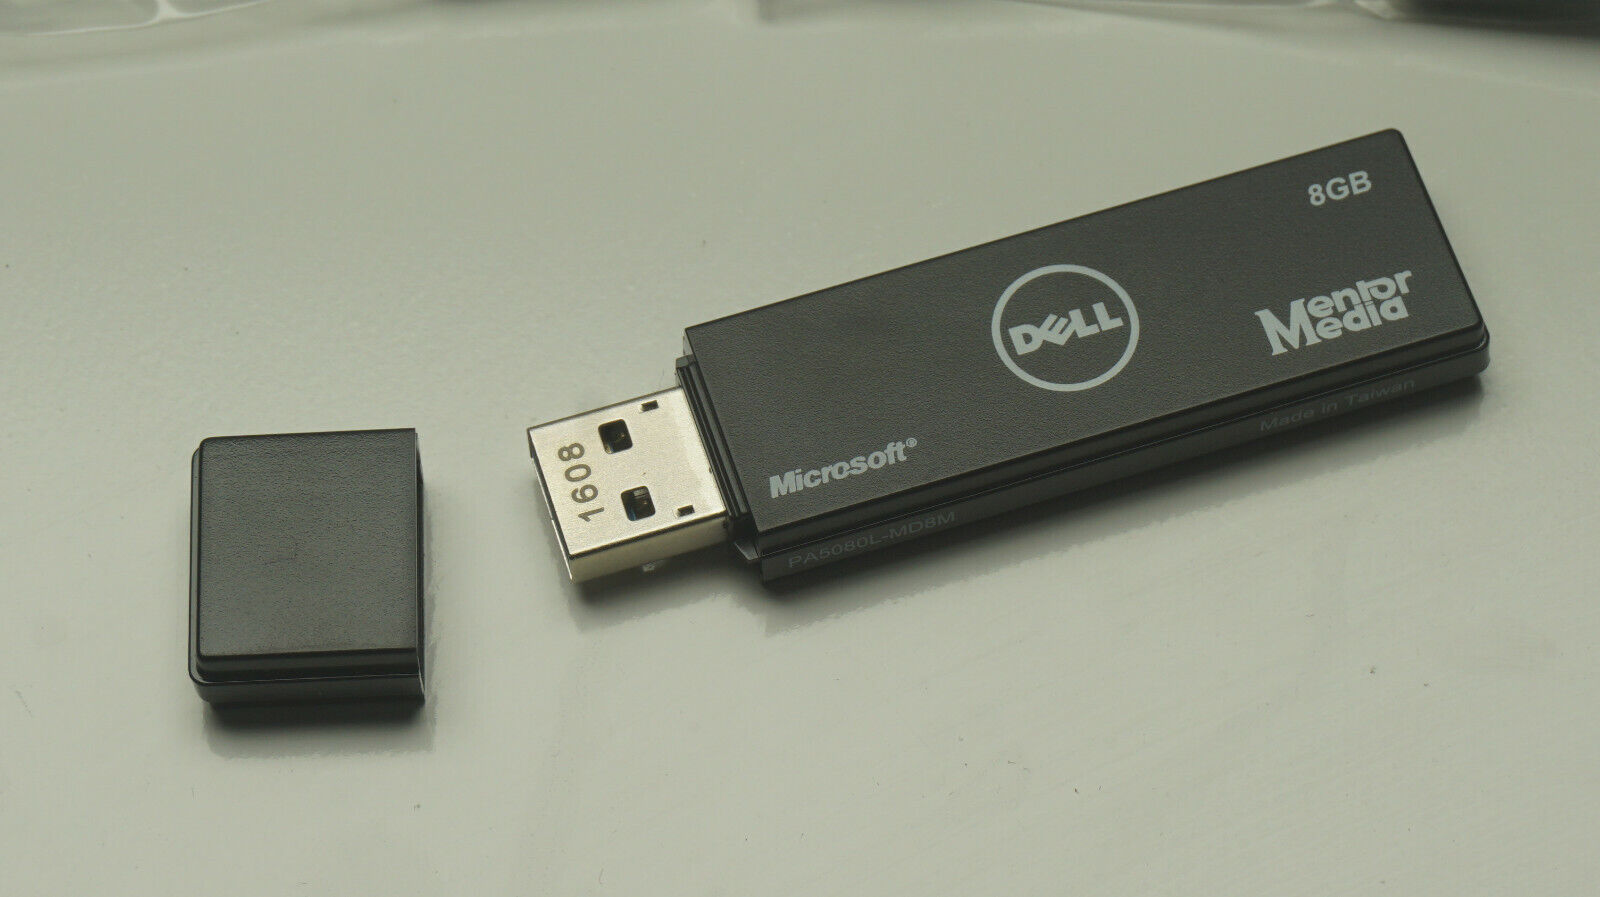 Dell Windows 7 Home Premium OS Recovery Restore Media USB Stick 8GB, 4H184 64bit